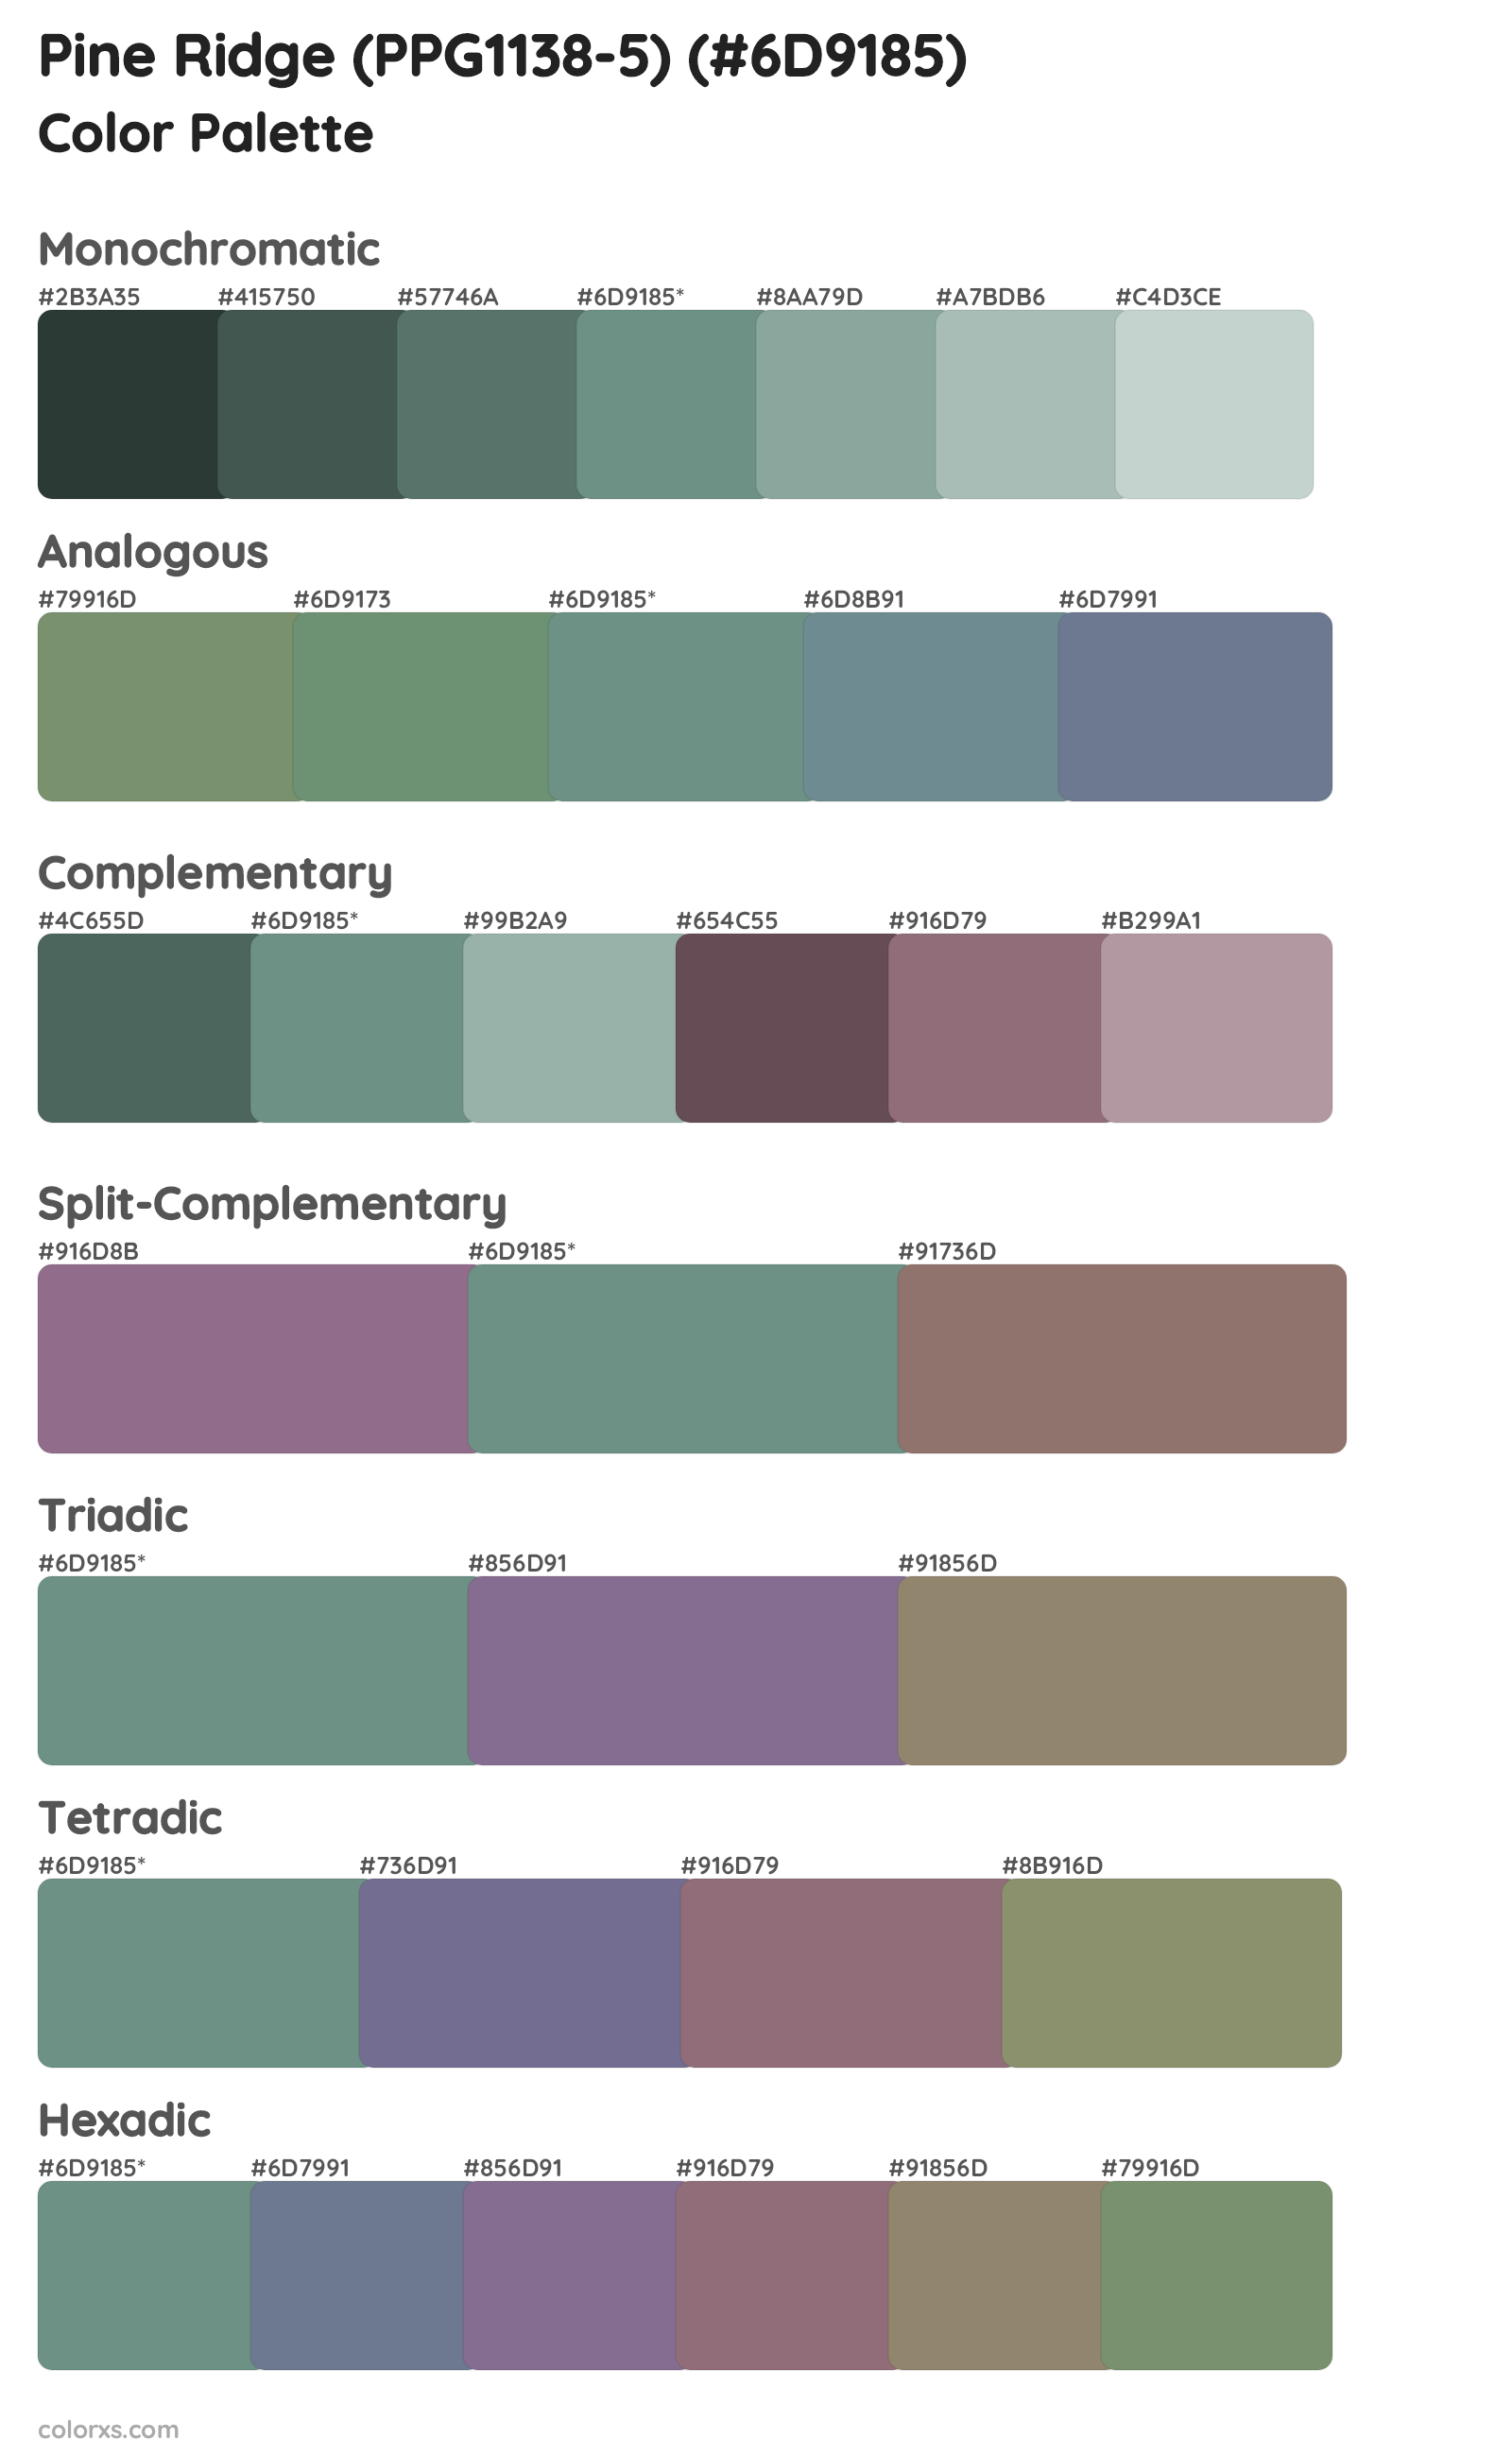 Pine Ridge (PPG1138-5) Color Scheme Palettes